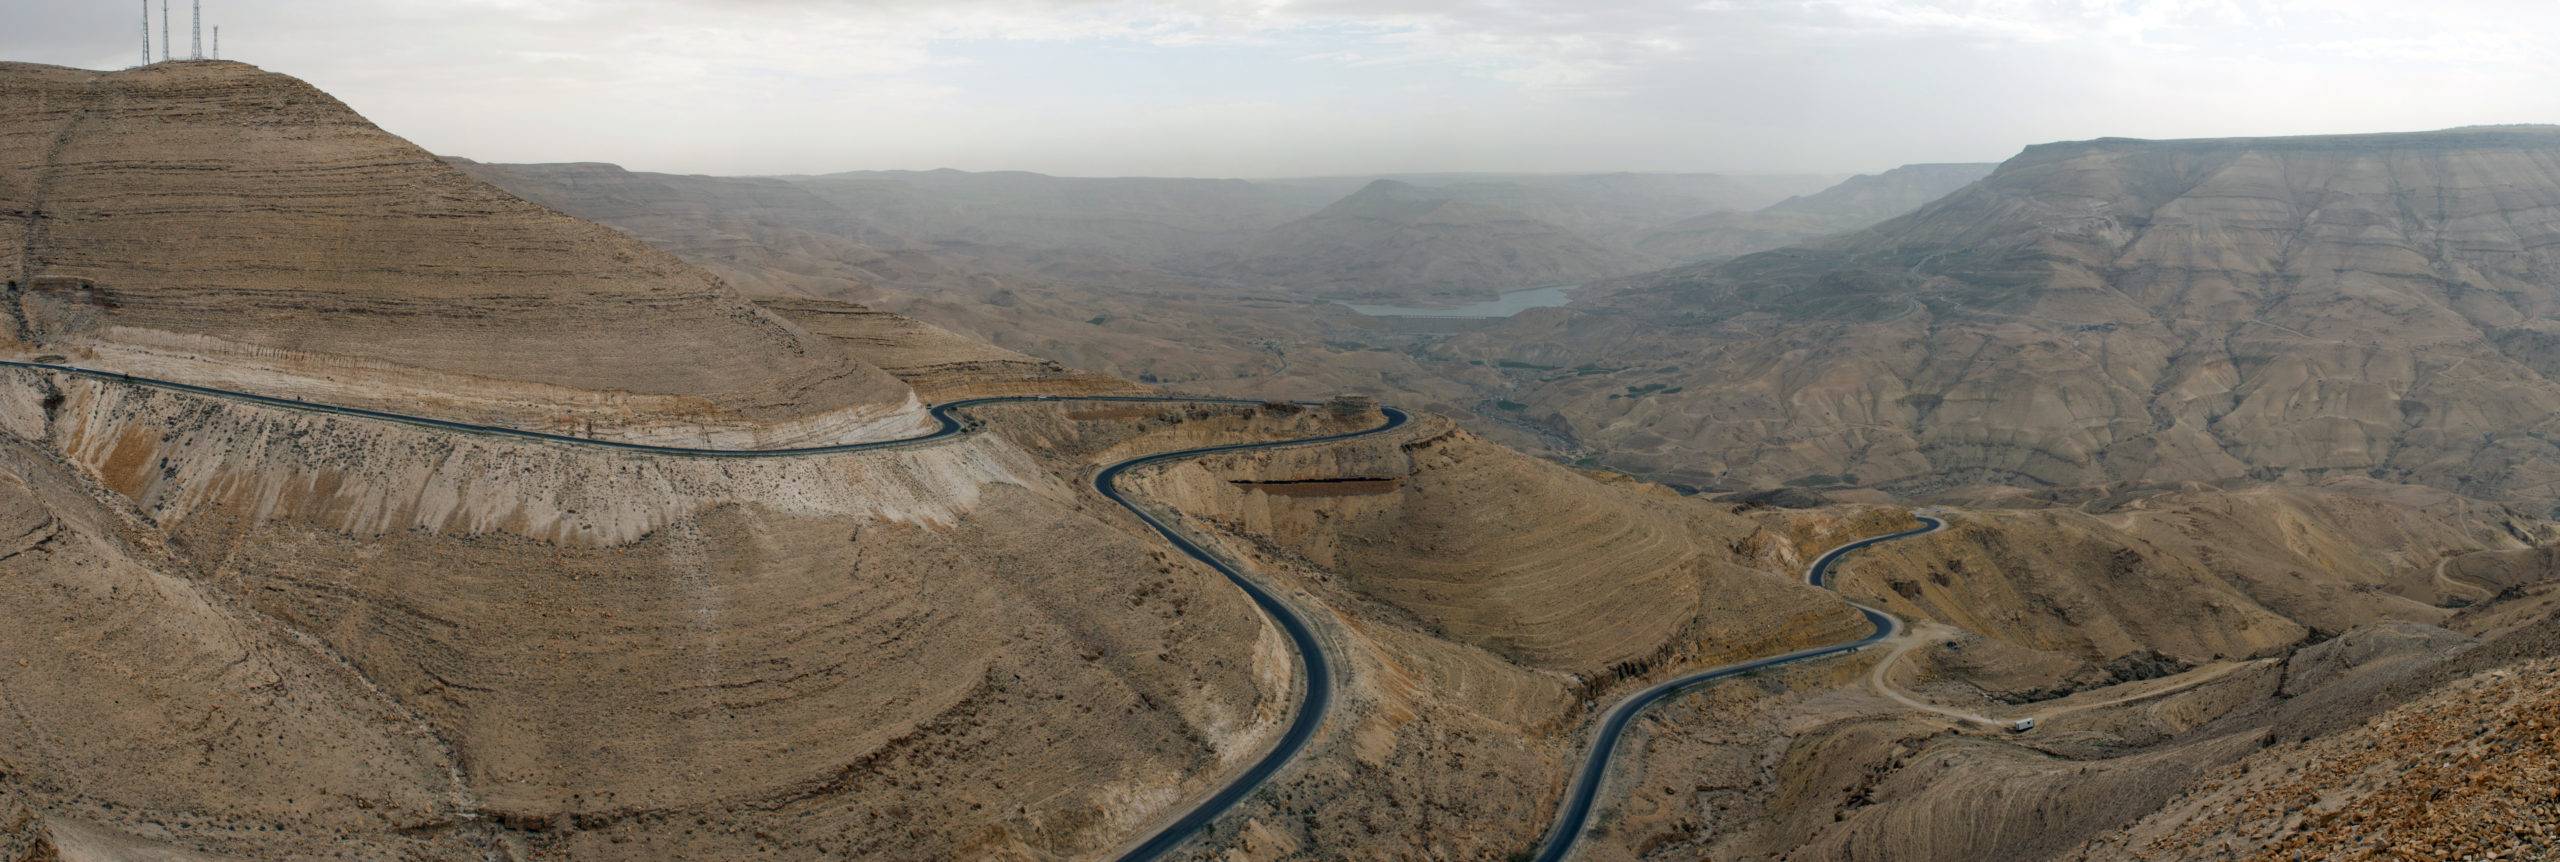 Wadi Mujib Giordania